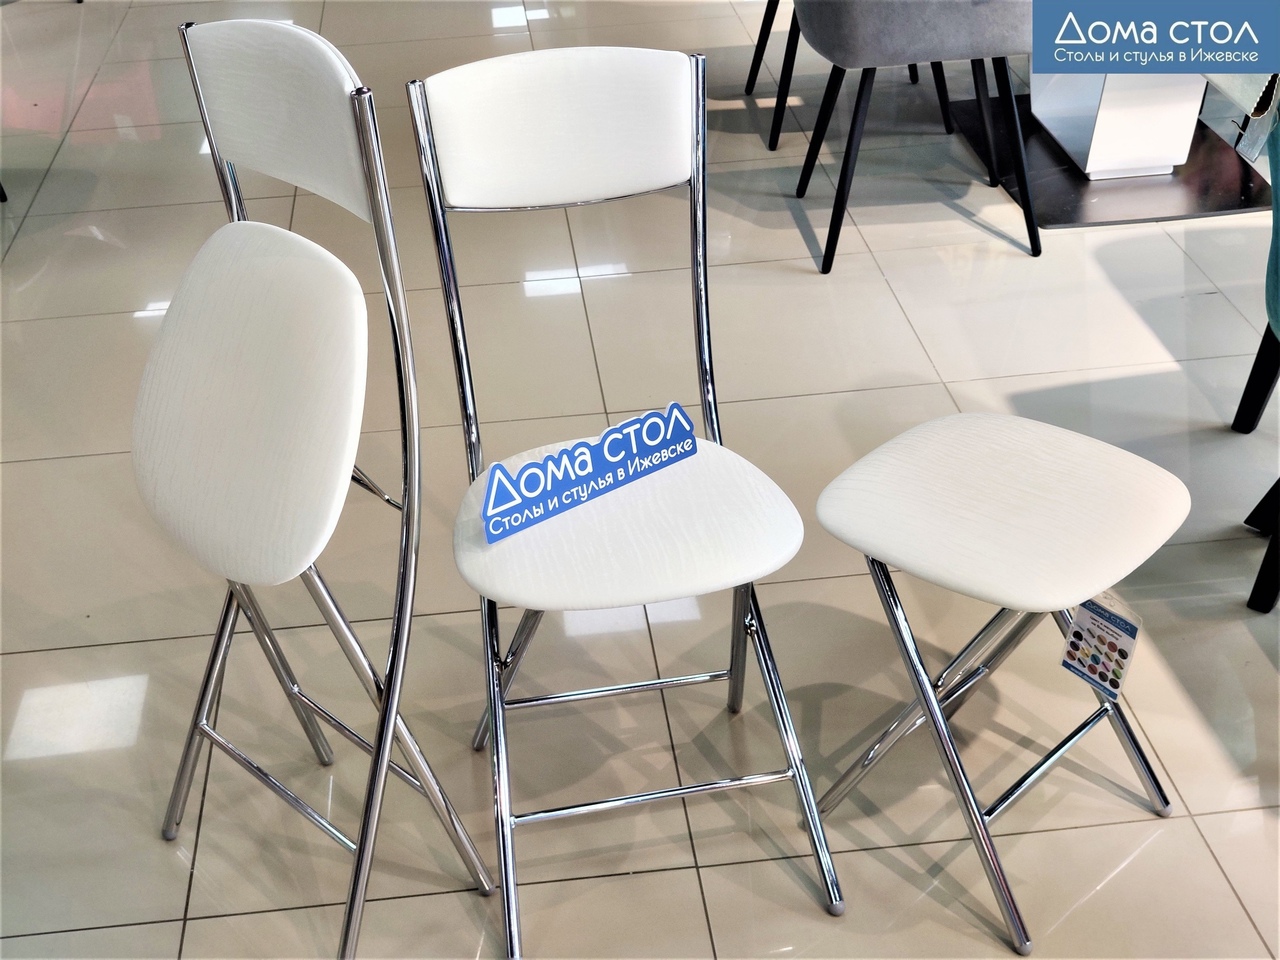 Складные стулья и складной табурет - идеальный вариант для гостеприимных хозяев.